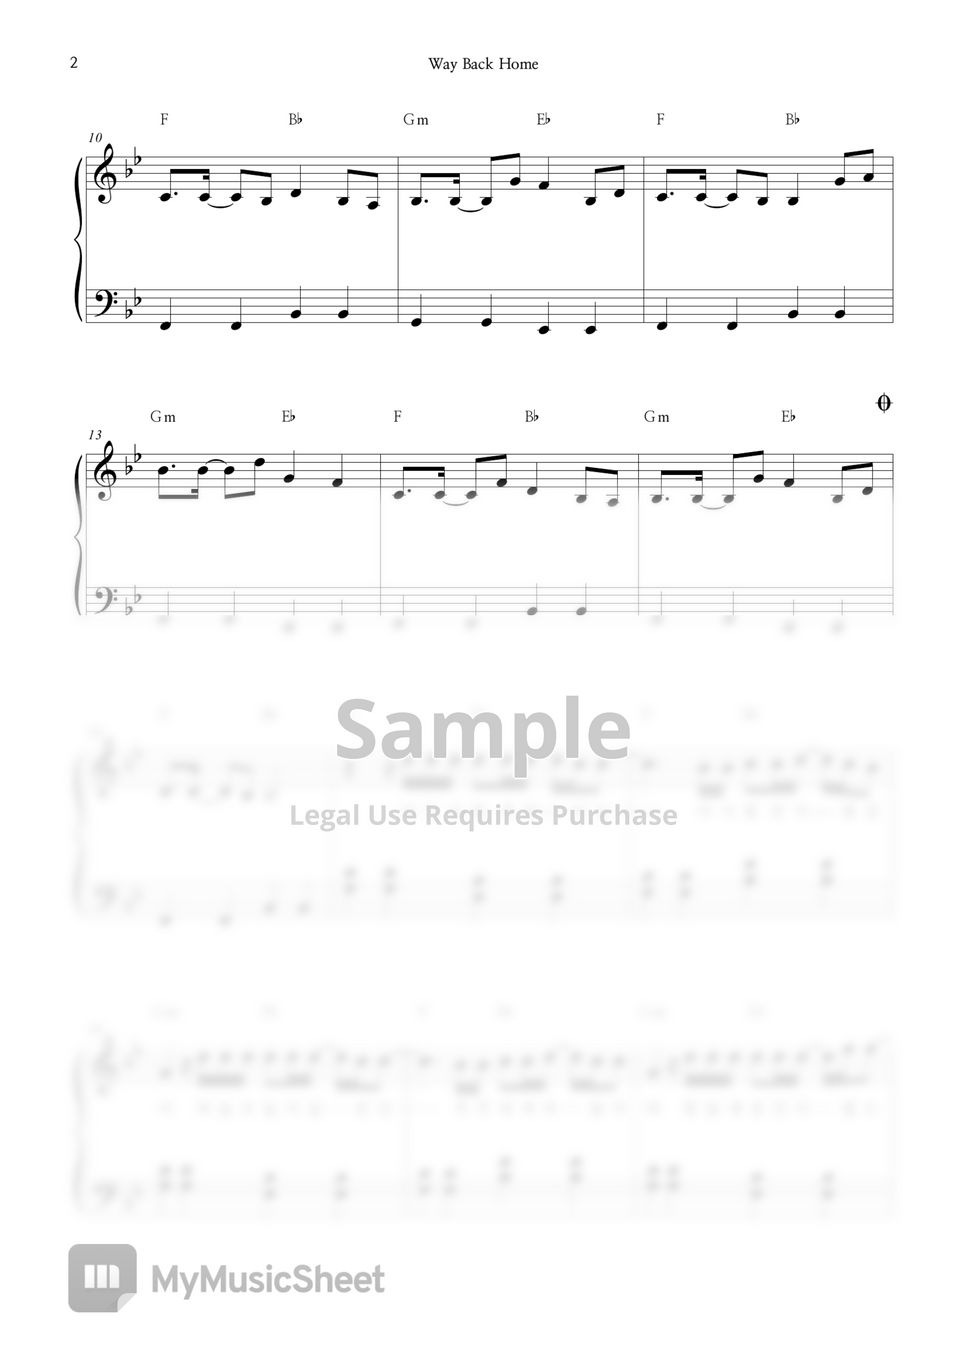 SHAUN – Way Back Home Easy Piano Sheet Music